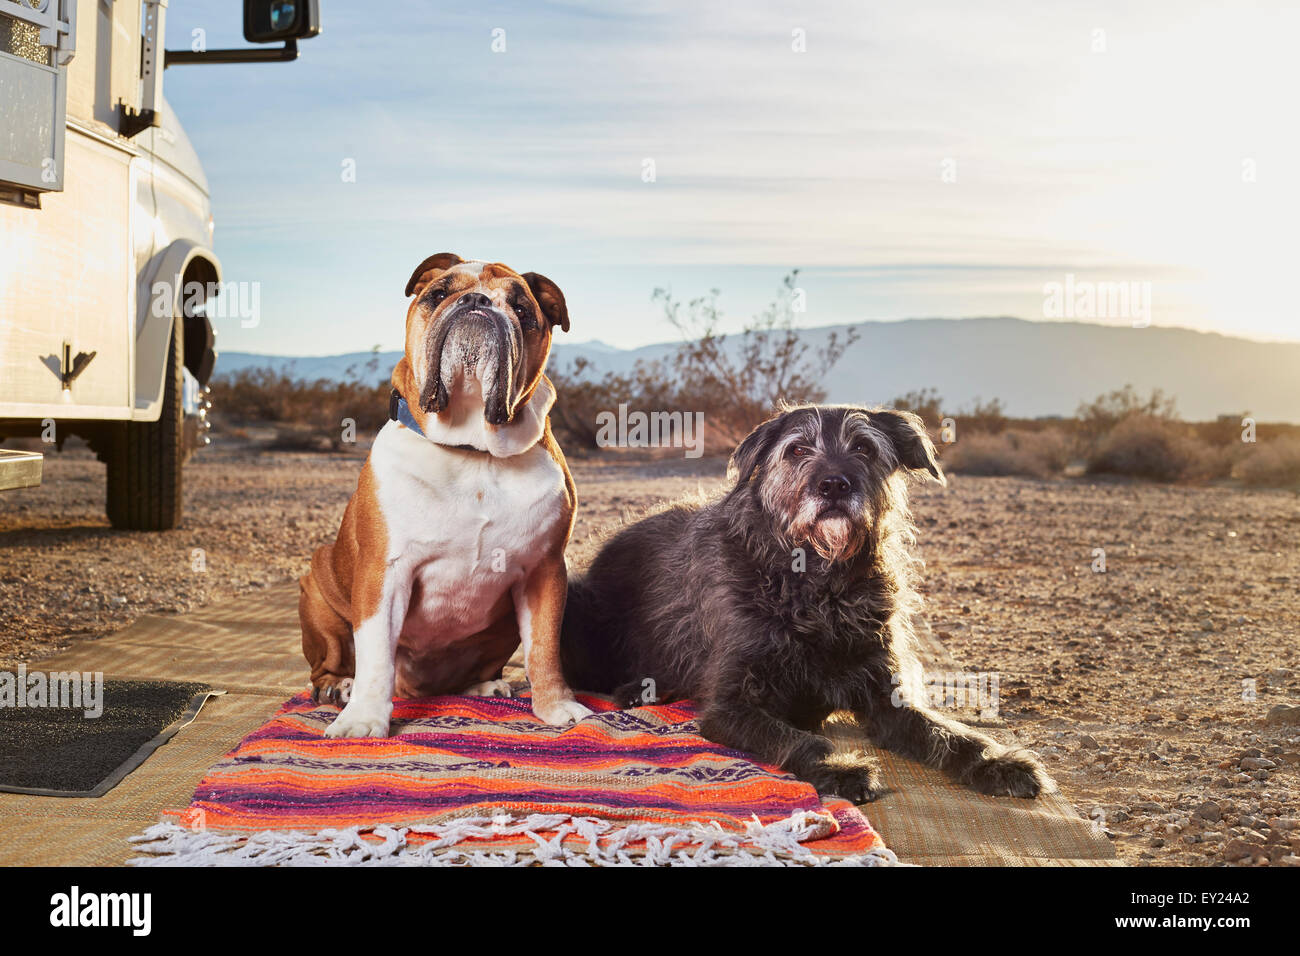 Ritratto di due cani sul tappeto nel parco del rimorchio Foto Stock